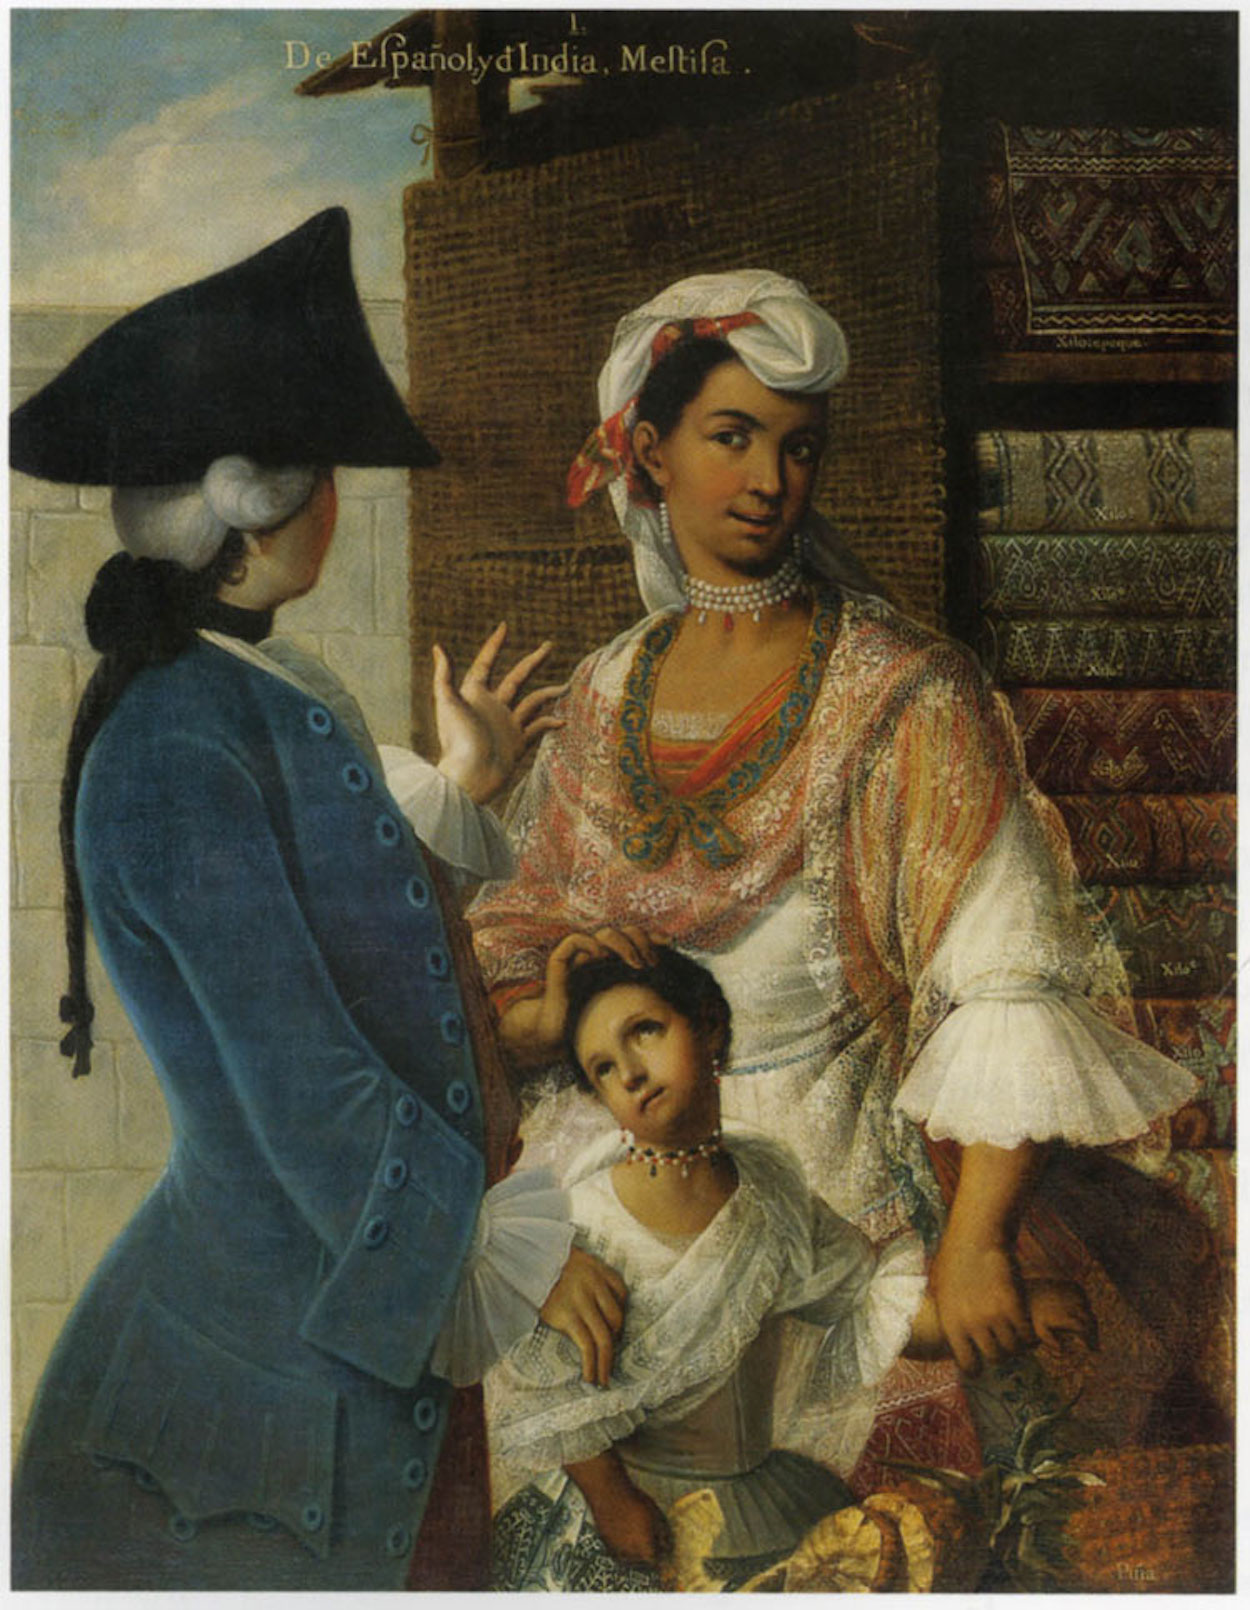 De Espagnõl e India, Mestiza by Miguel Mateo Maldonado y Cabrera - бл. 1763 